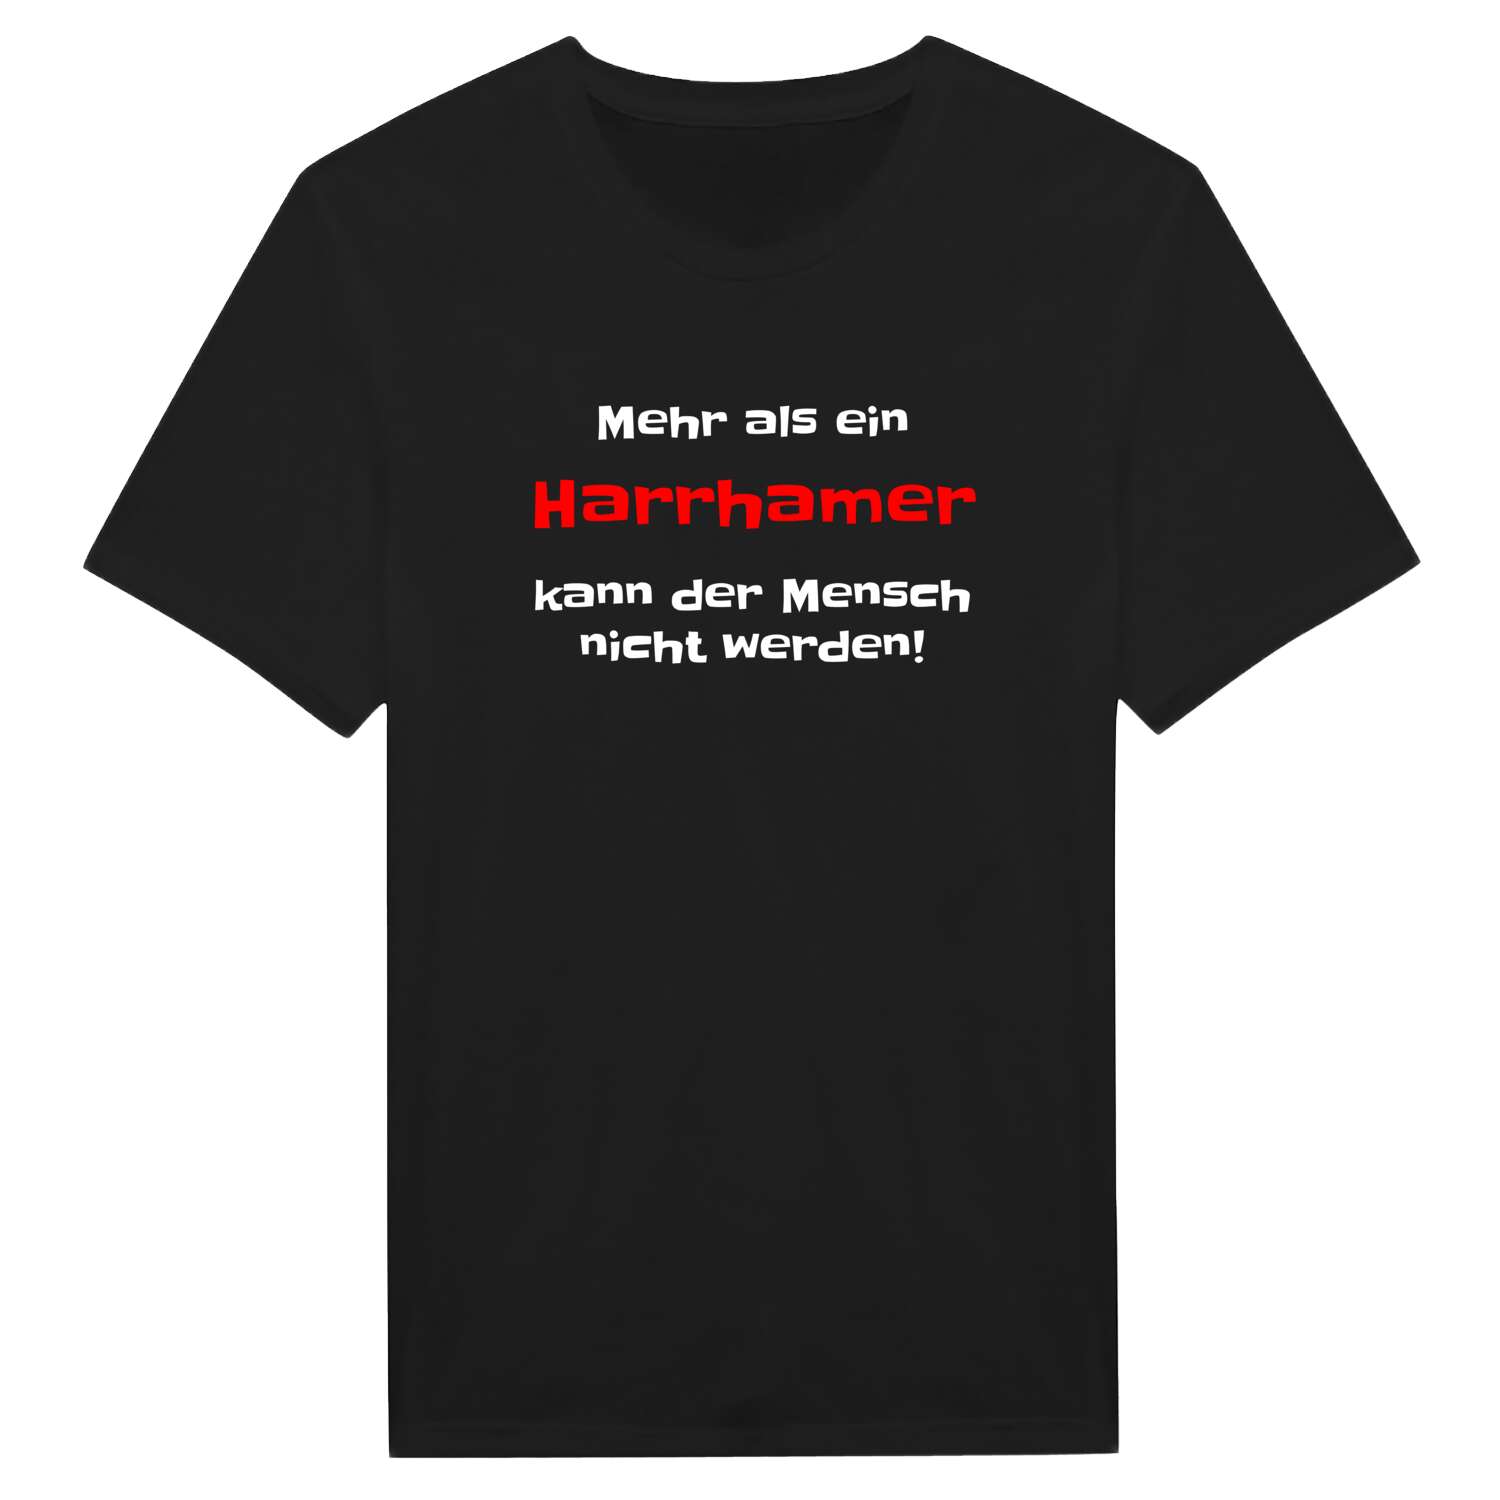 Harrham T-Shirt »Mehr als ein«